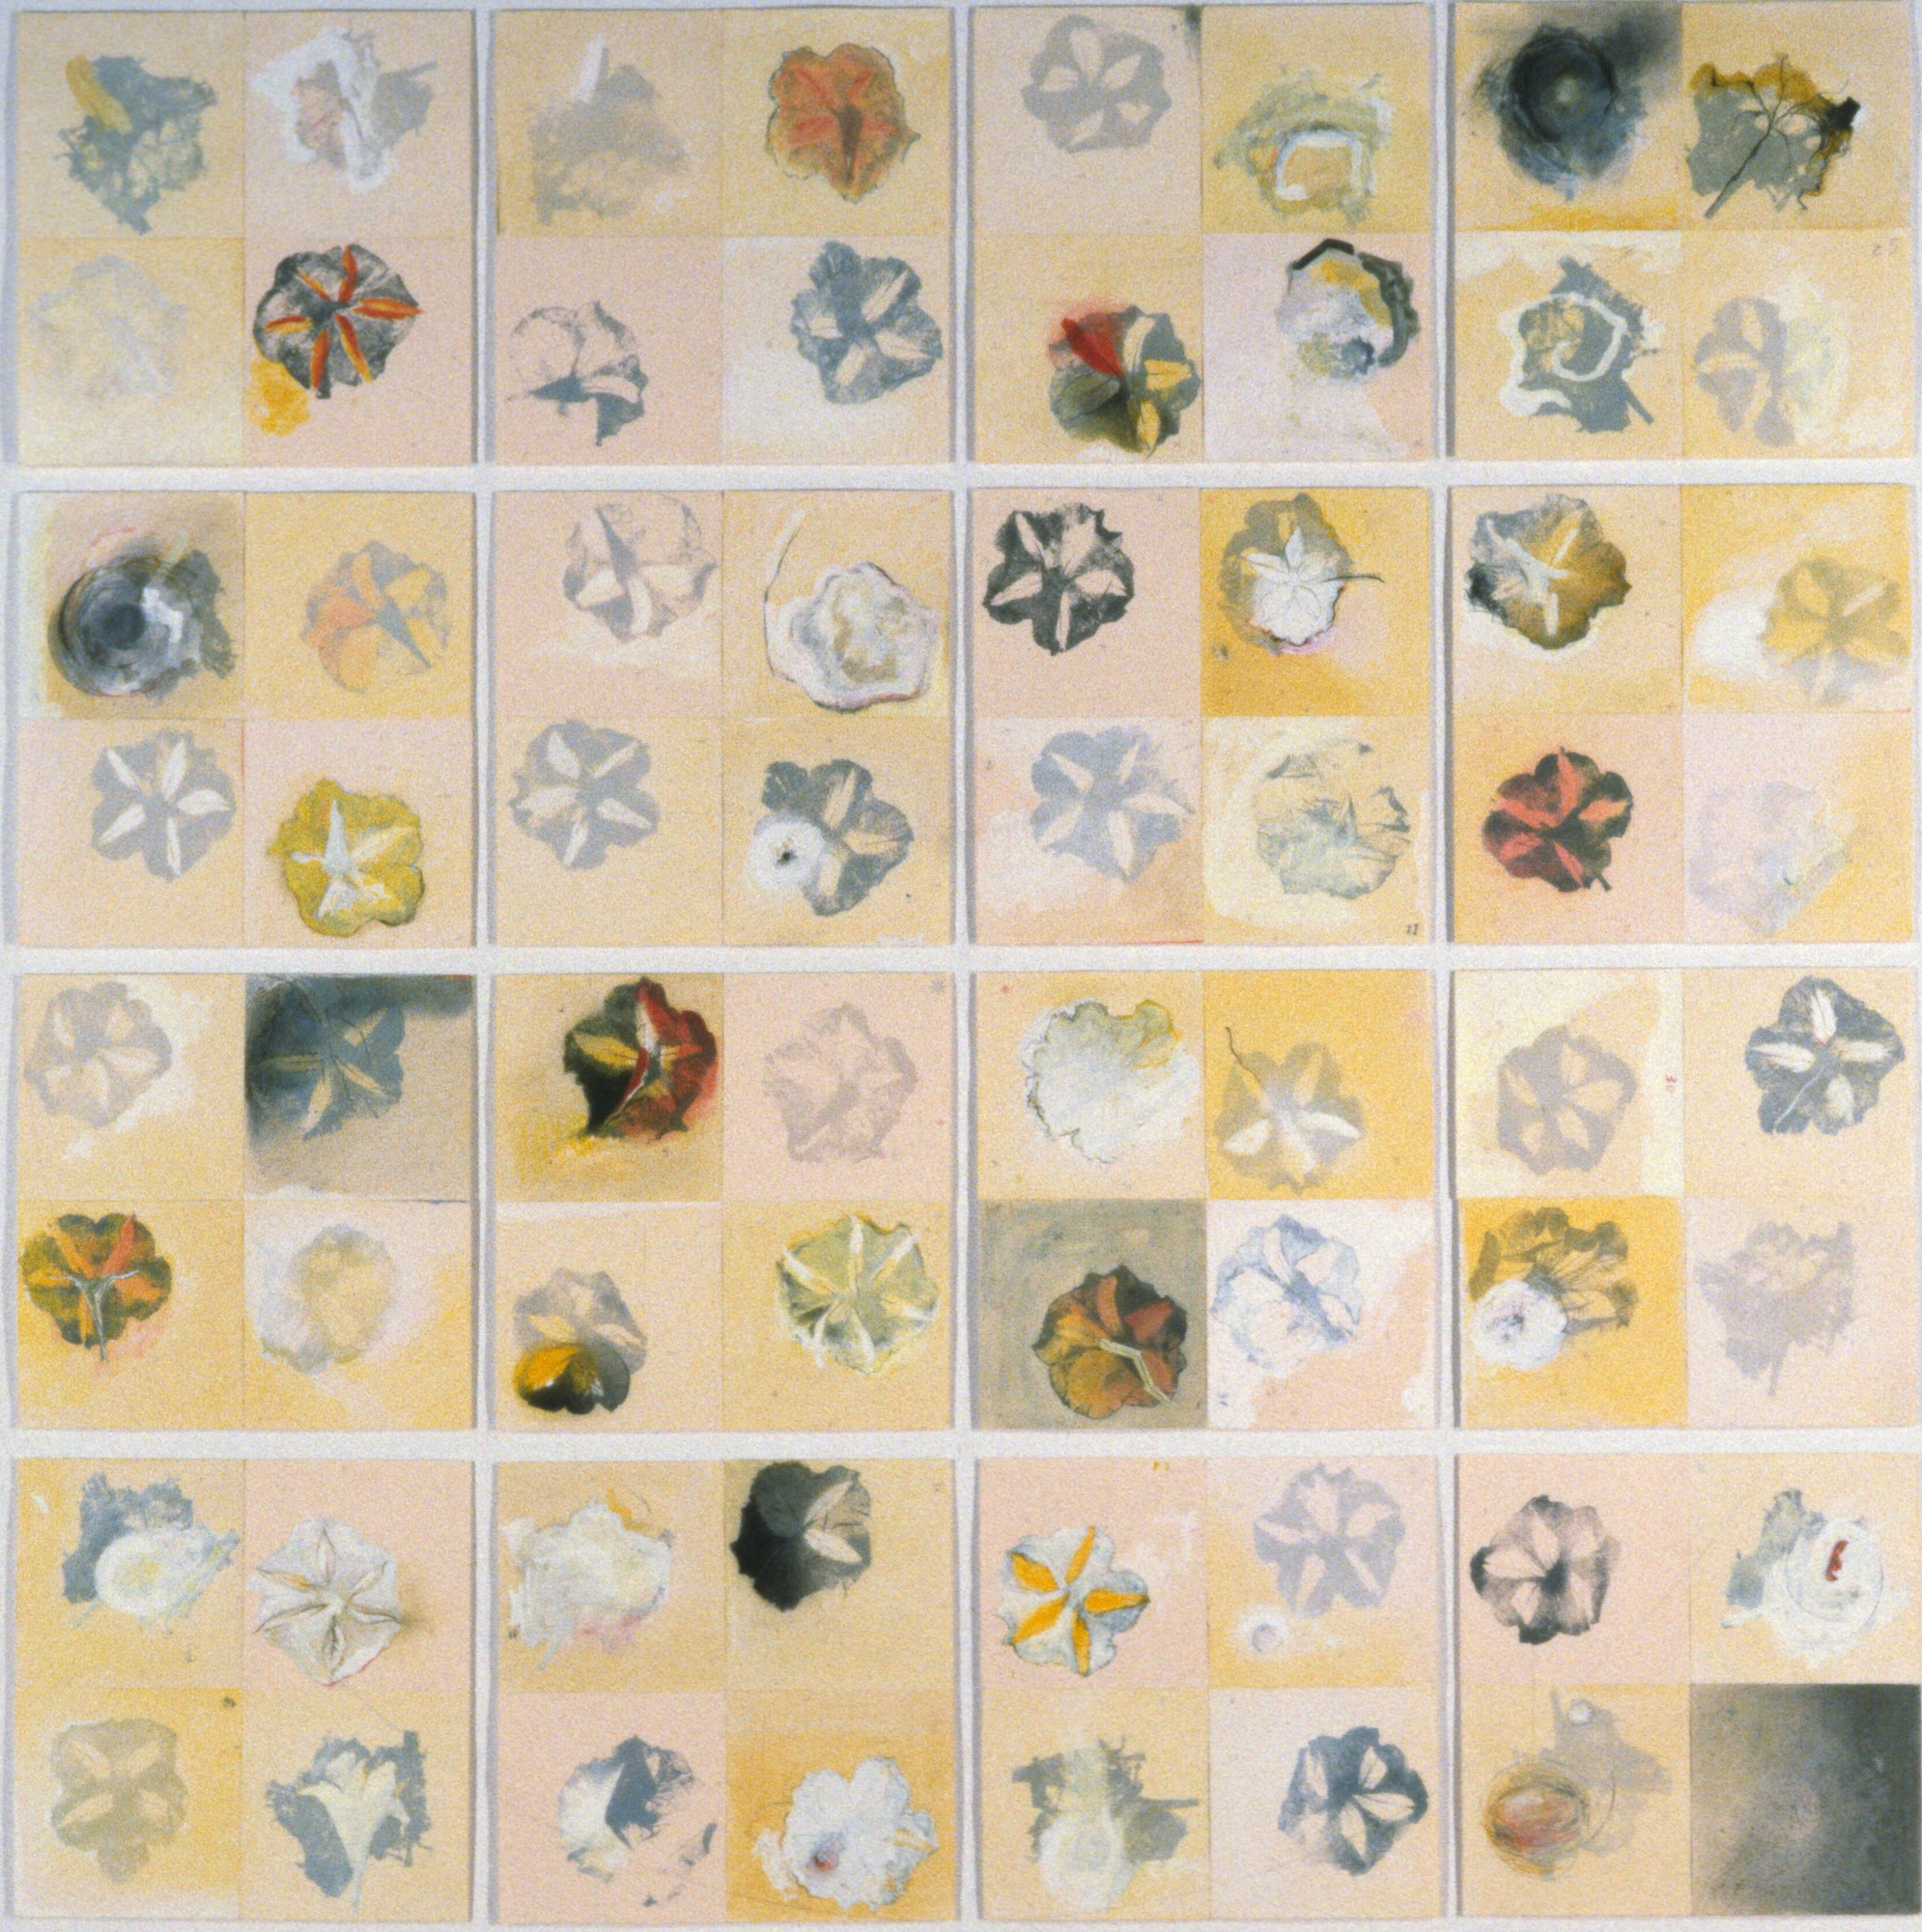 Le corps-étoiles, 1996. Lithography and mixed techniques on paper, 210 cm x 210 cm. Collection des beaux-arts, Ministère des Affaires mondiales et du Commerce international, Ottawa, On.